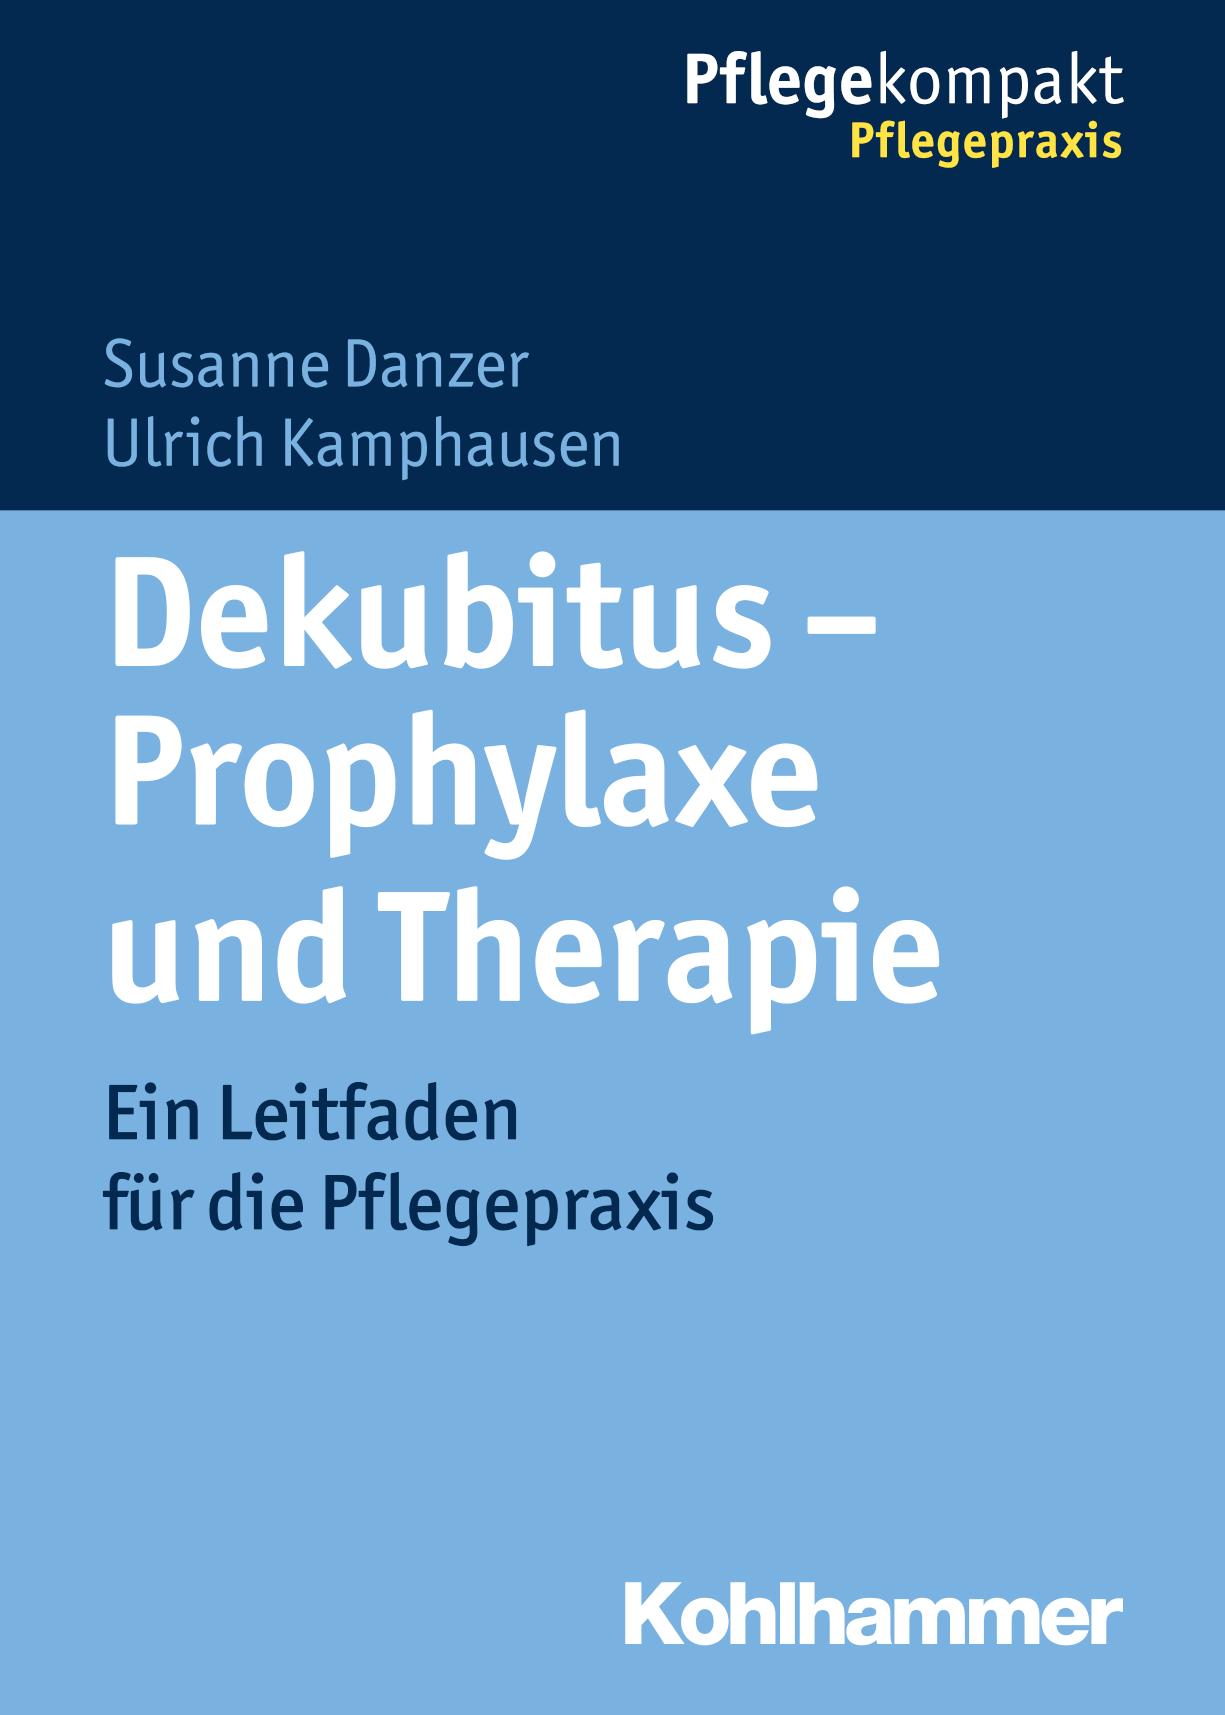 Dekubitus - Prophylaxe und Therapie Ein Leitfaden für die Pflegepraxis